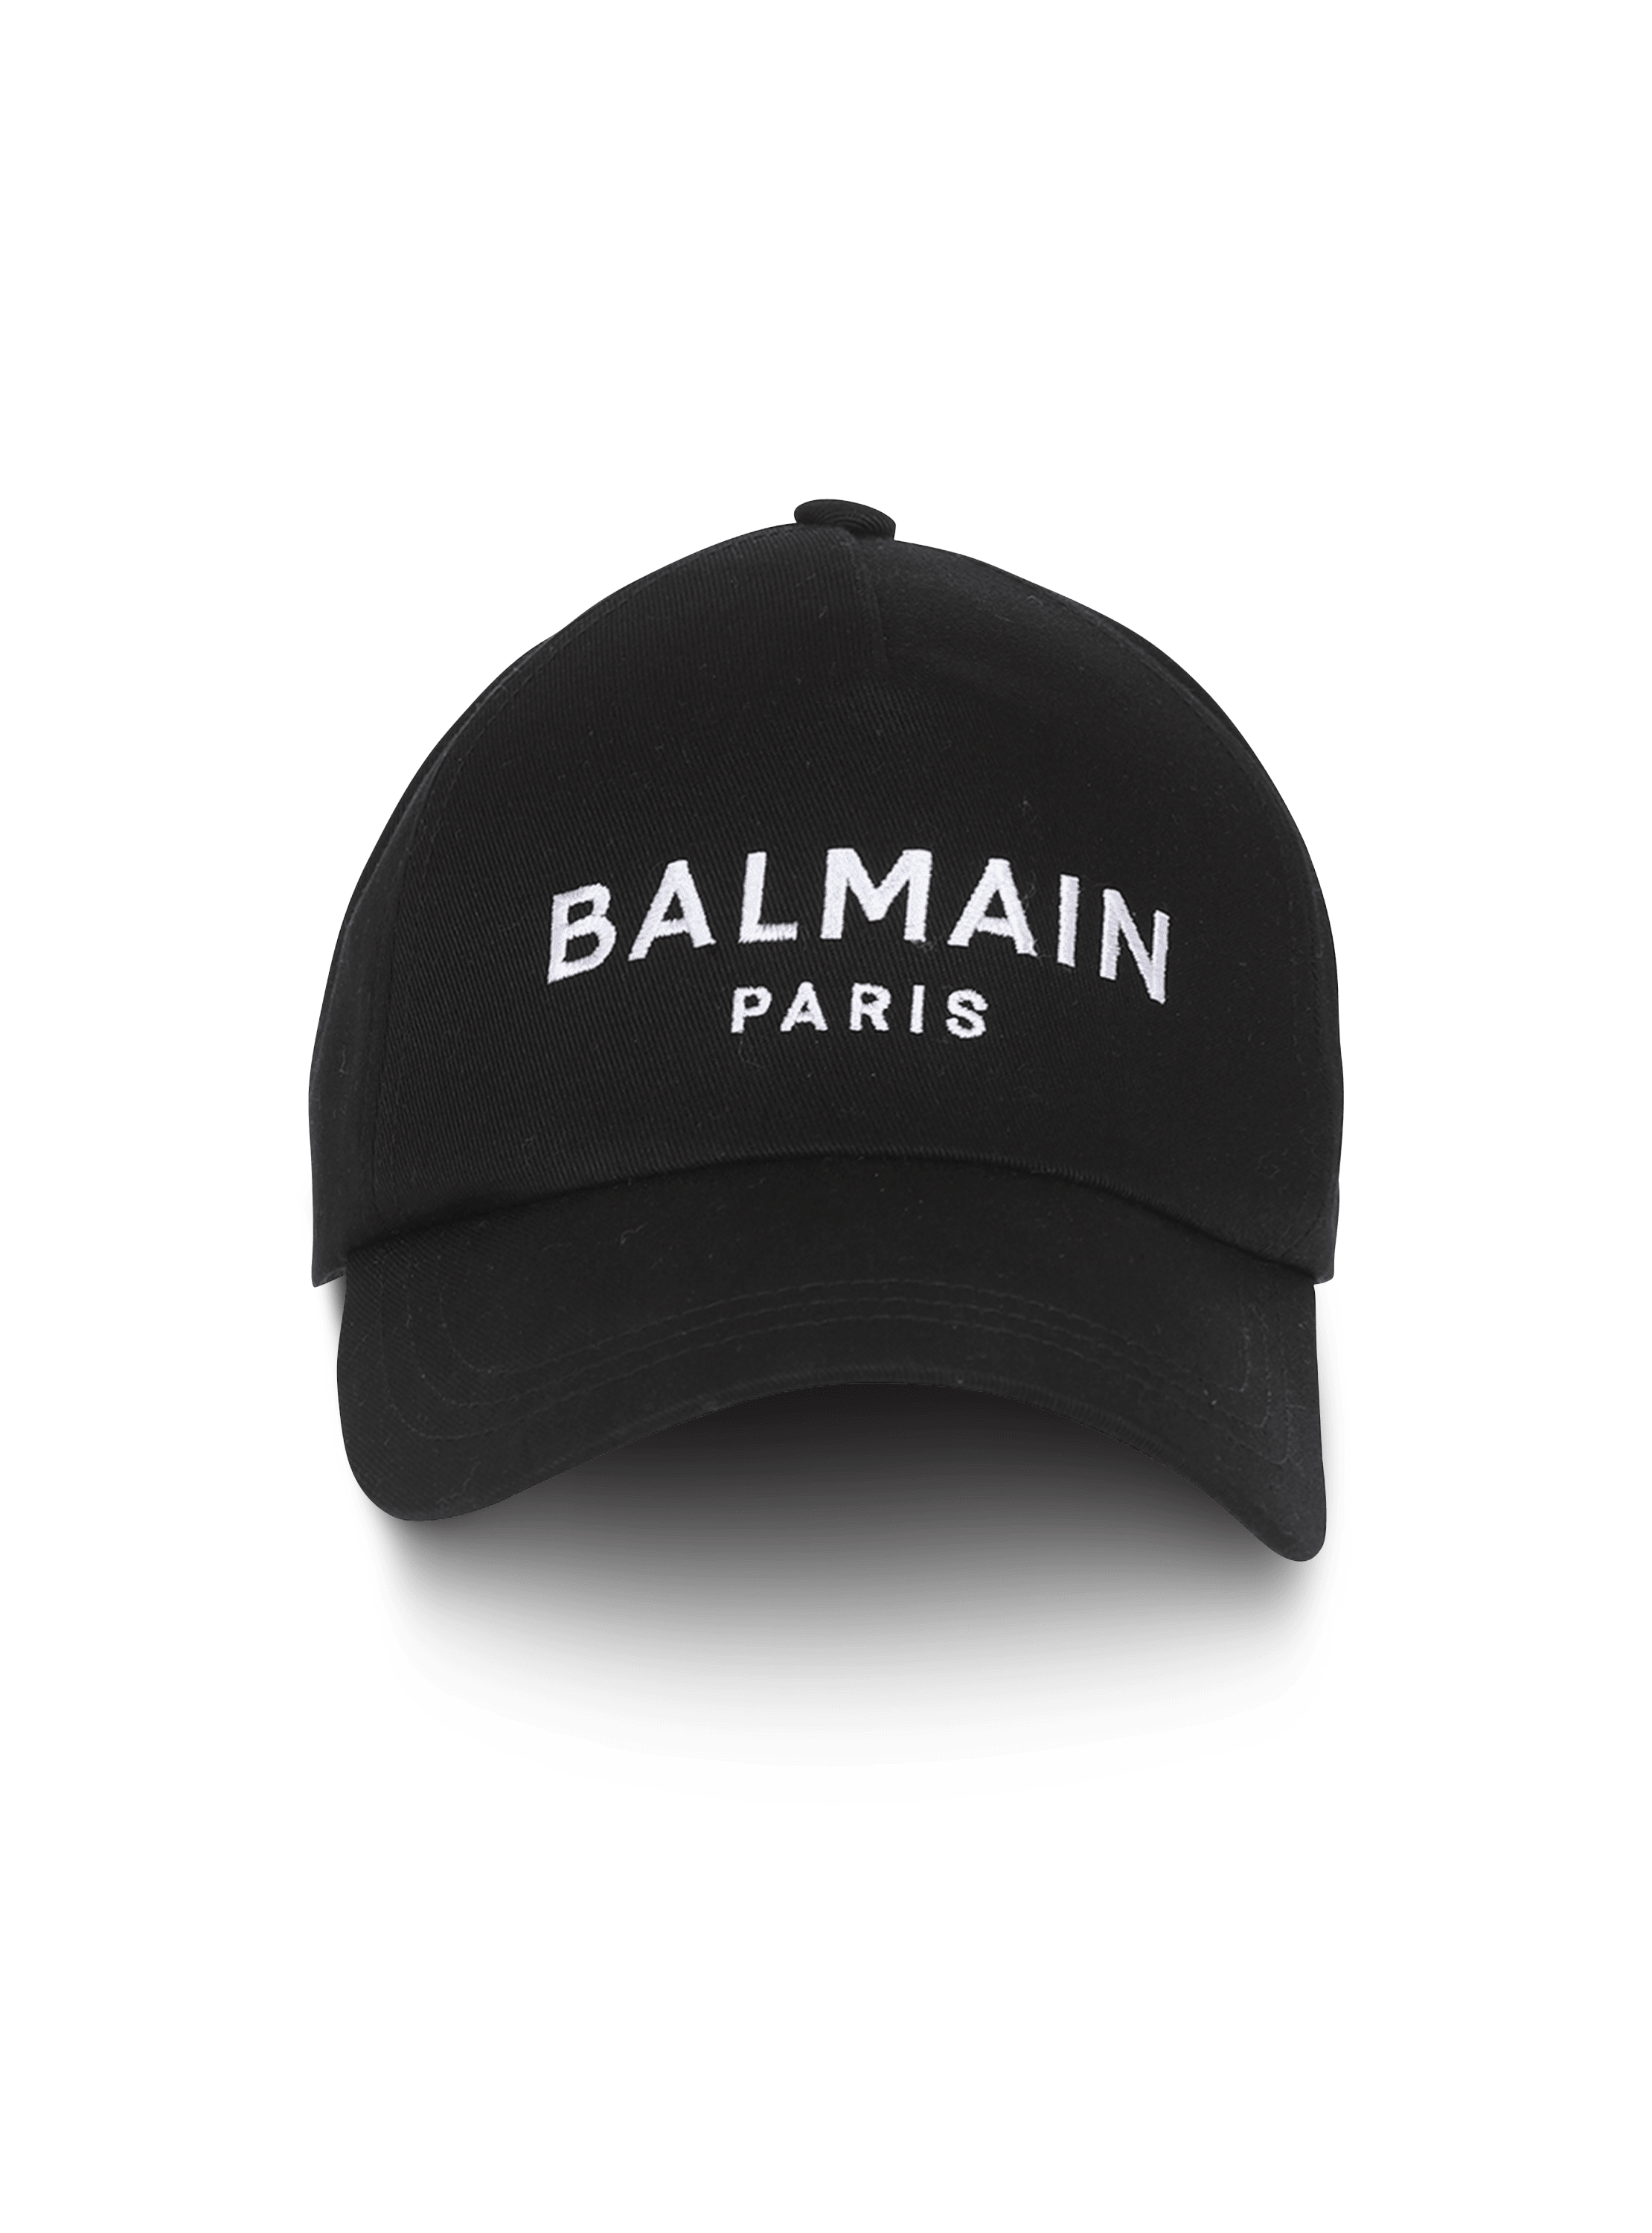 Gorra con logotipo de Balmain Paris bordado